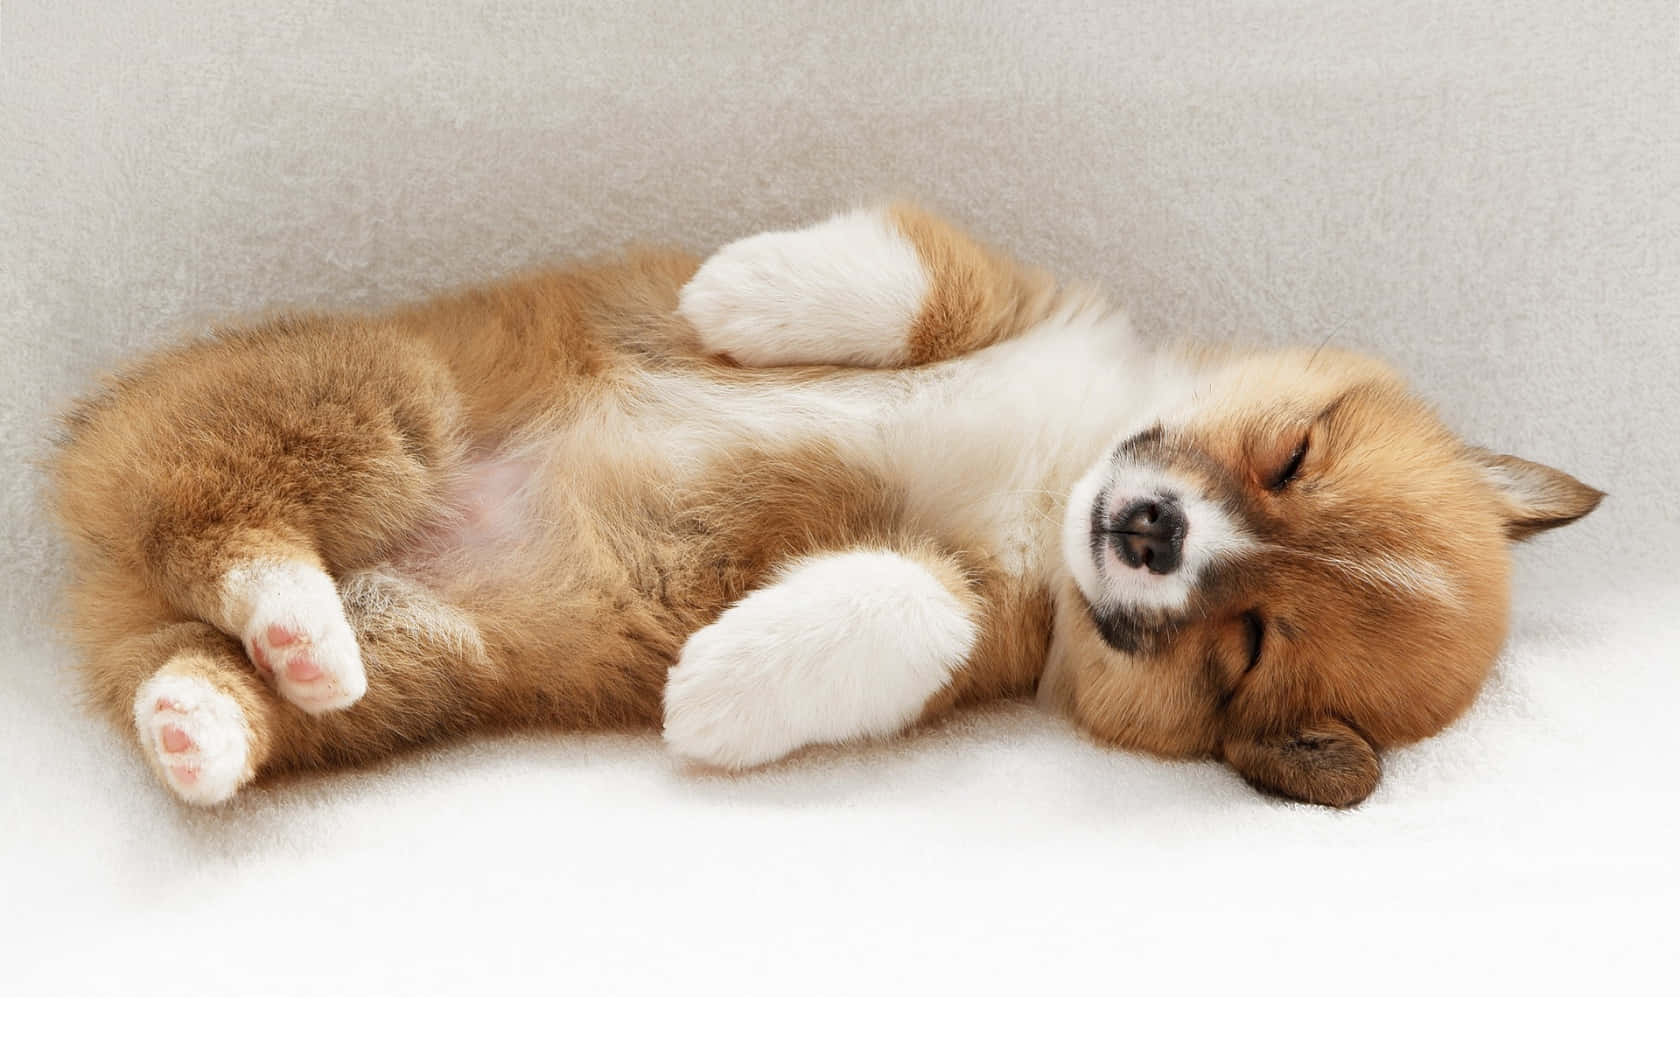 "A sweet little fluffy pup!" Wallpaper